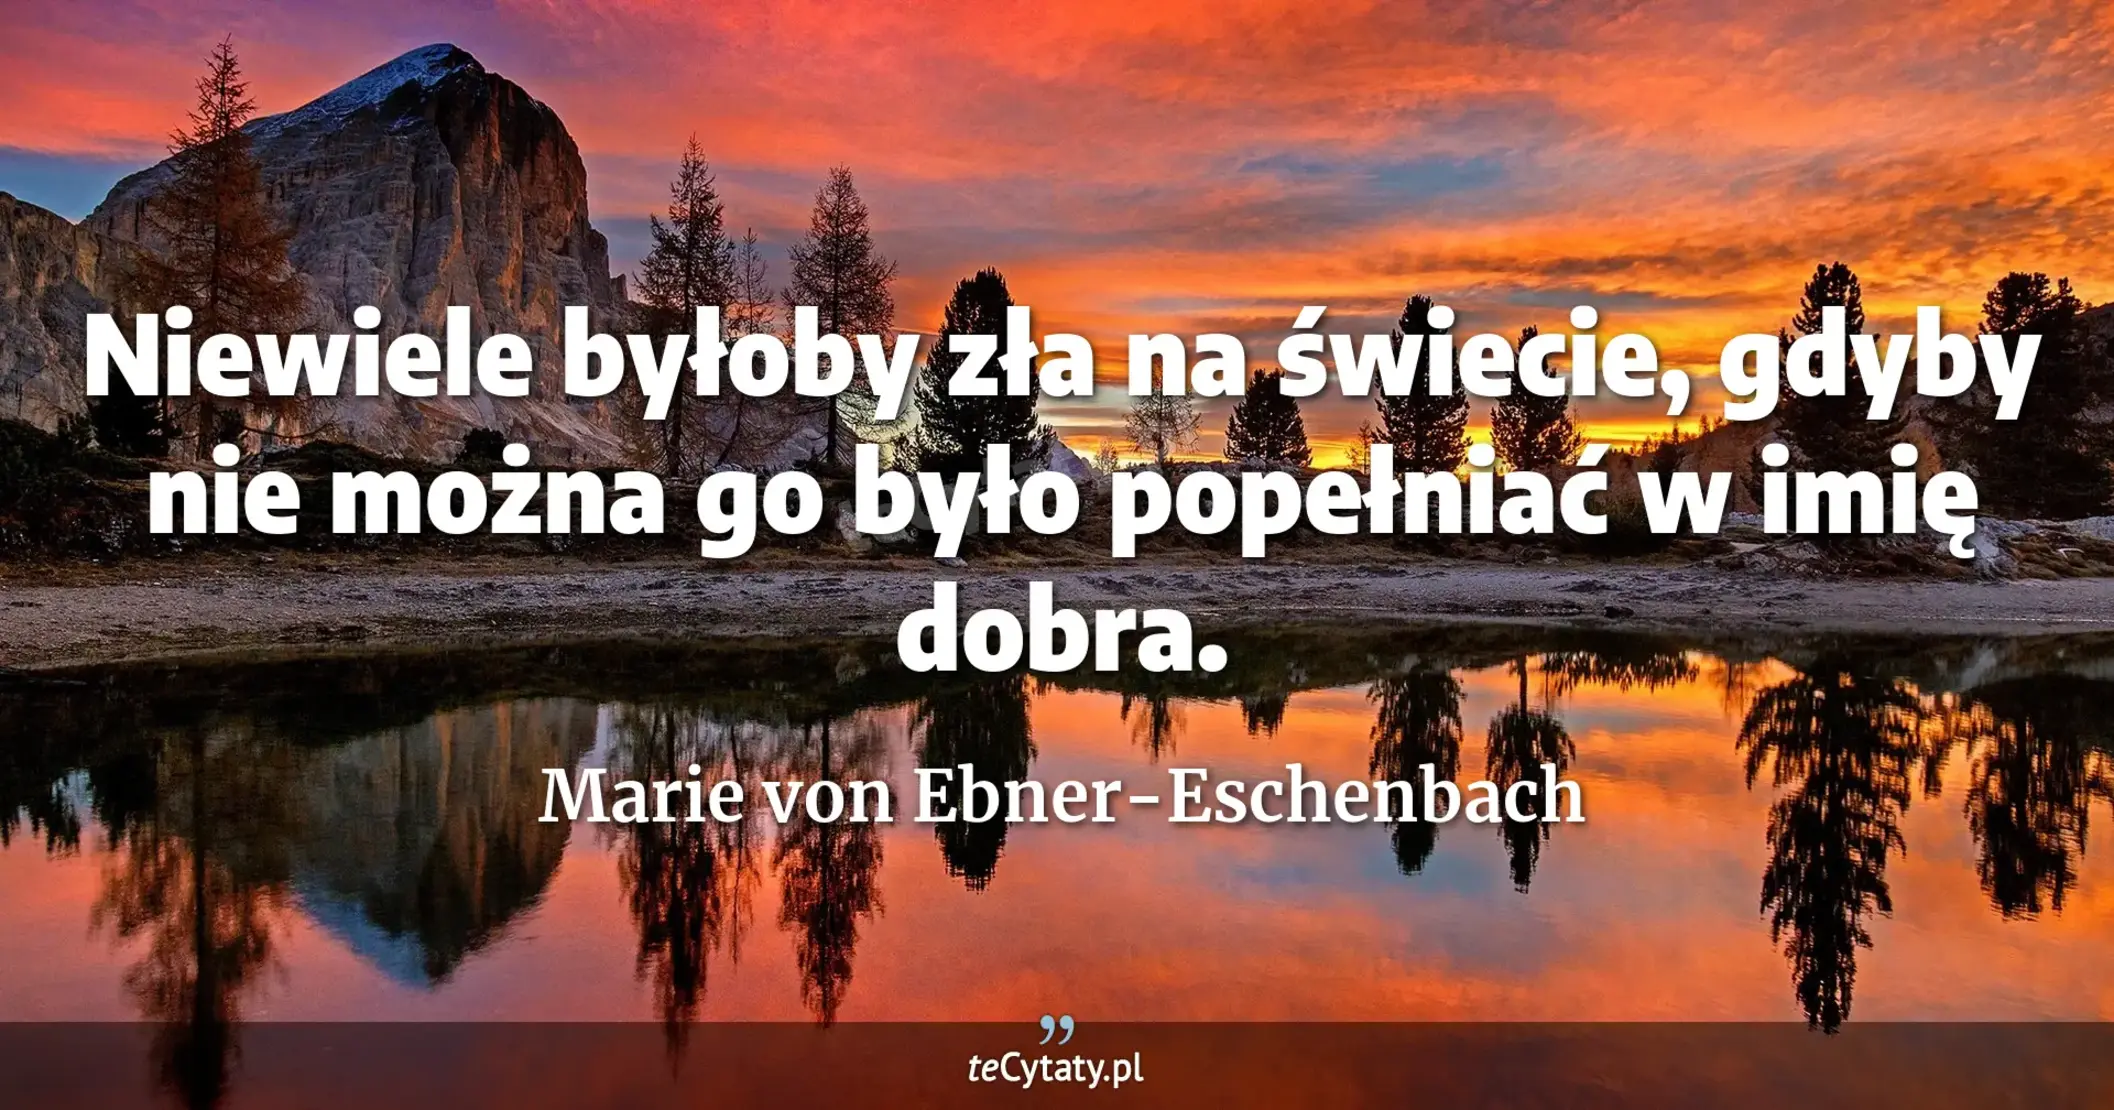 Niewiele byłoby zła na świecie, gdyby nie można go było popełniać w imię dobra. - Marie von Ebner-Eschenbach